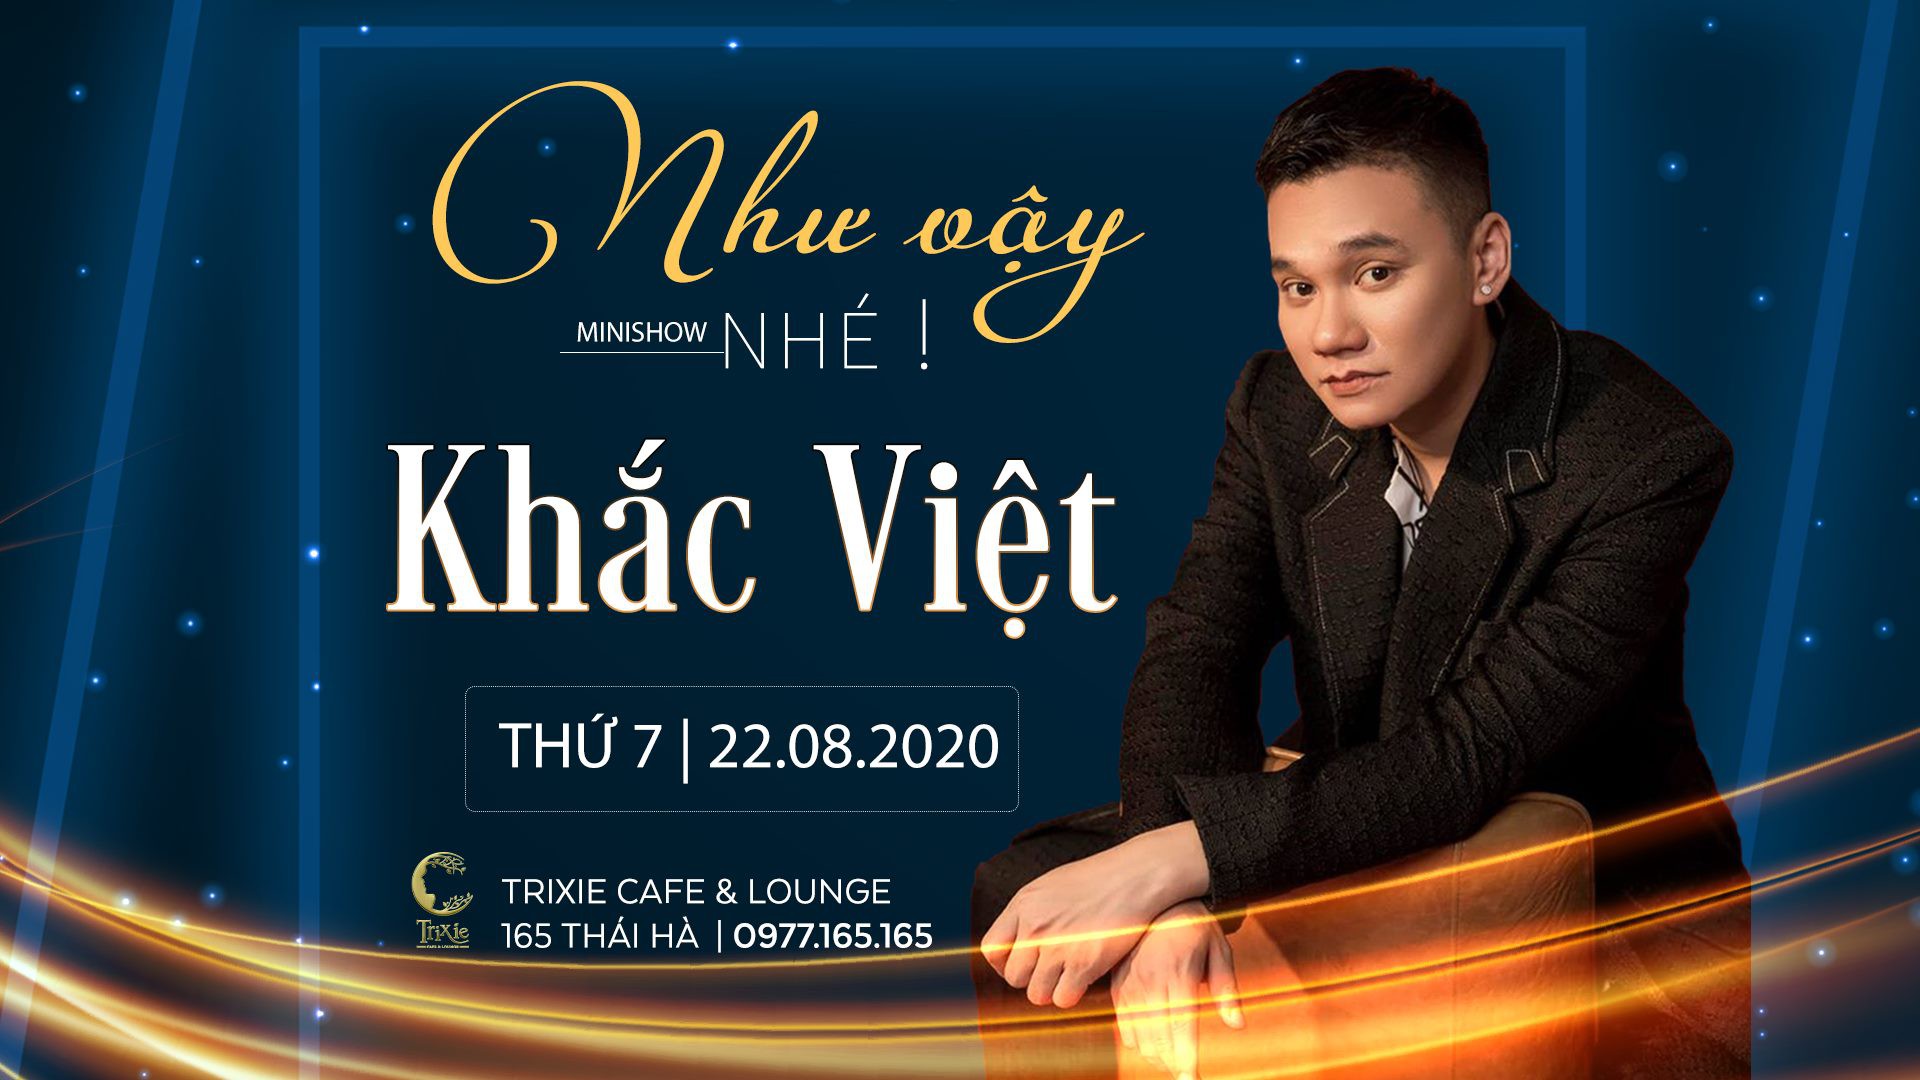 Minishow Khắc Việt tại Hà Nội ngày 22.08.2020